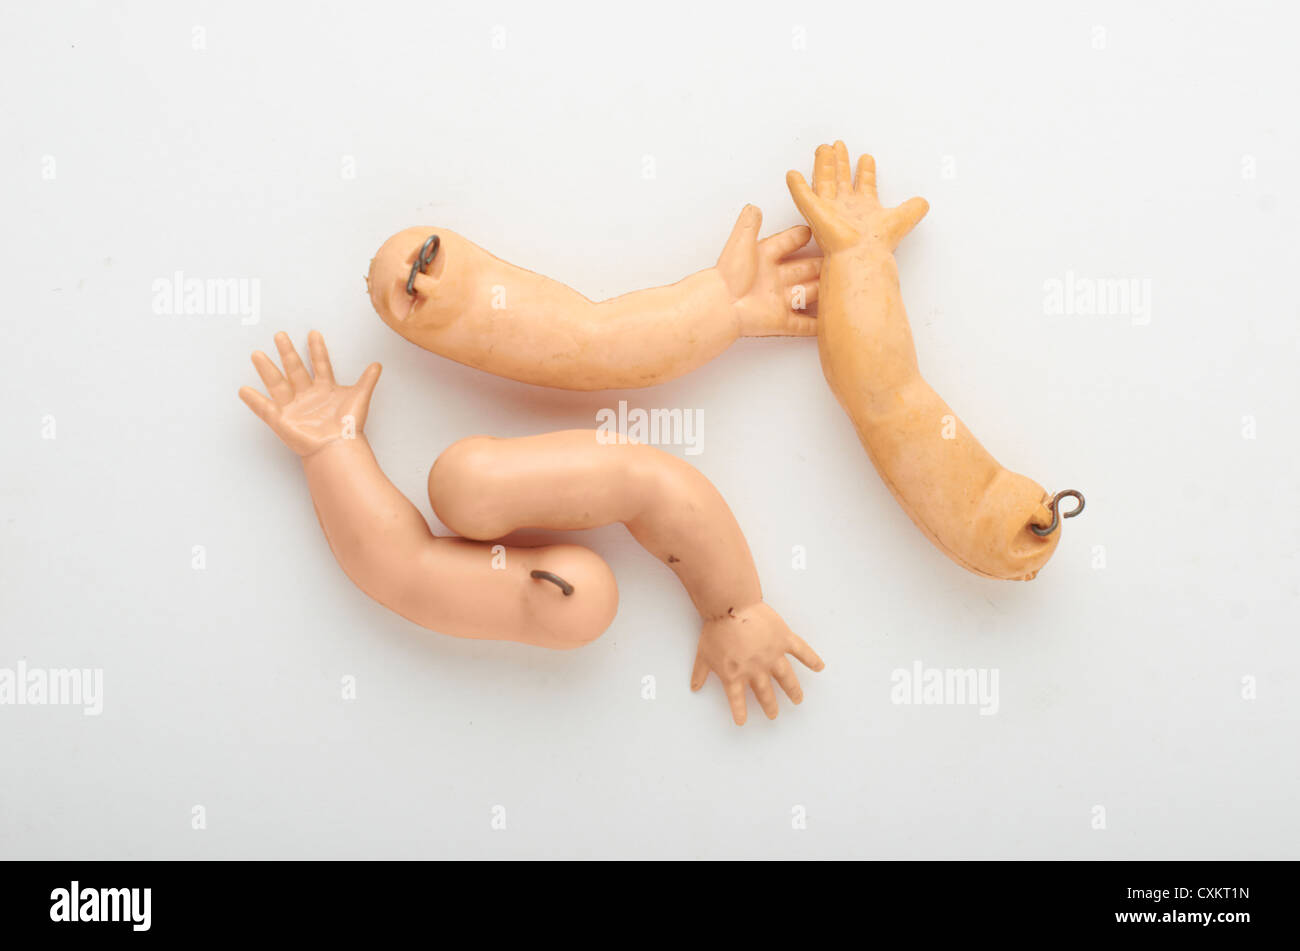 doll body parts Stock Photo